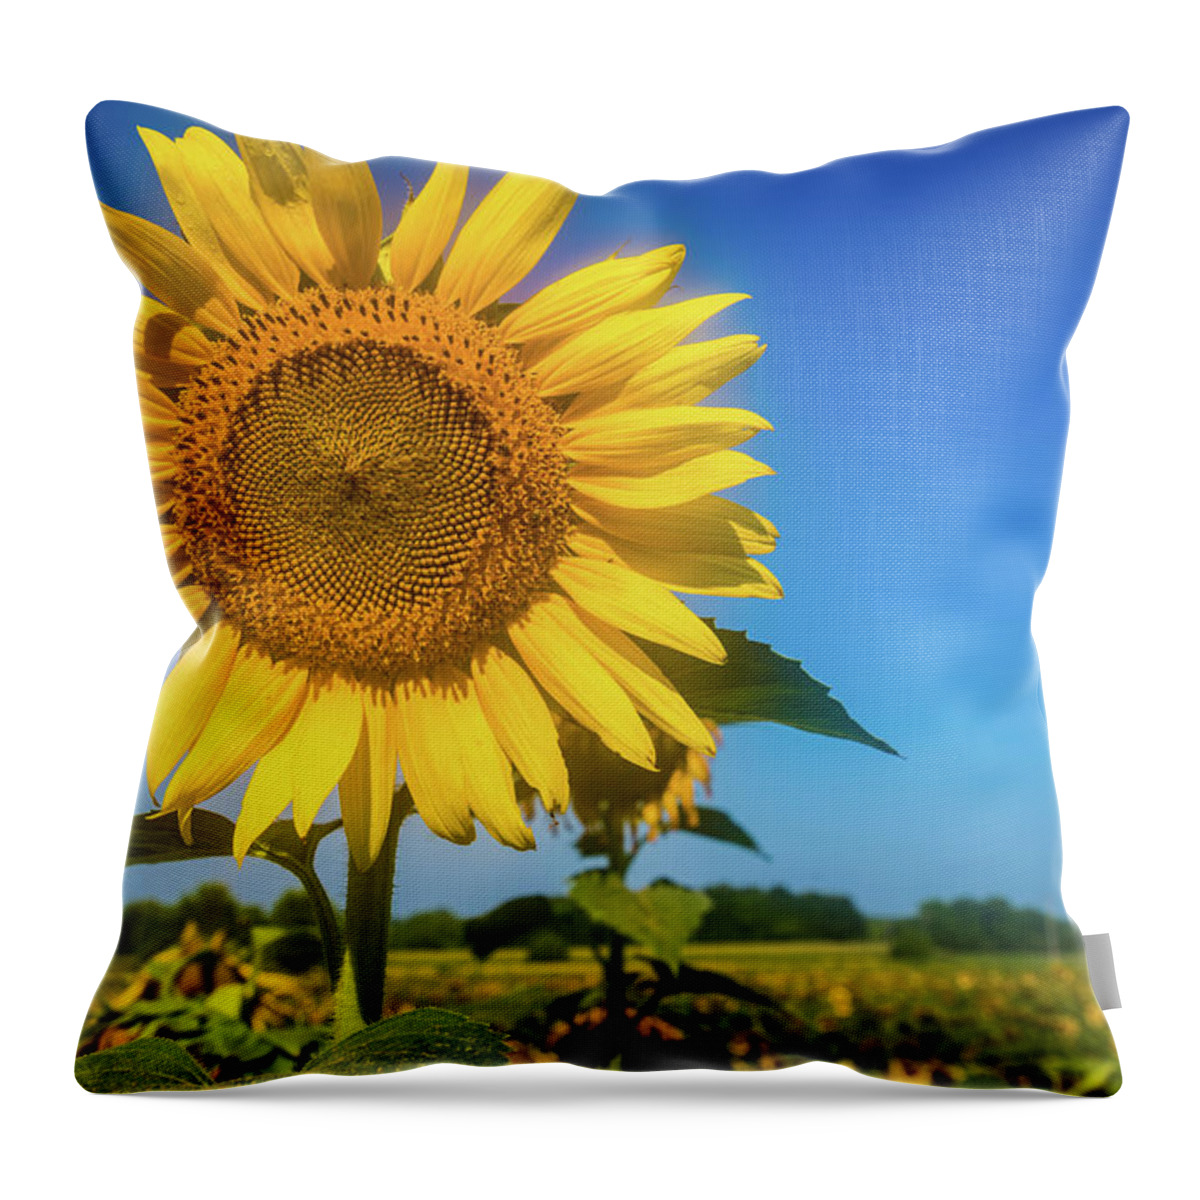 Alabama Throw Pillow featuring the photograph Summer Sunflower by James-Allen